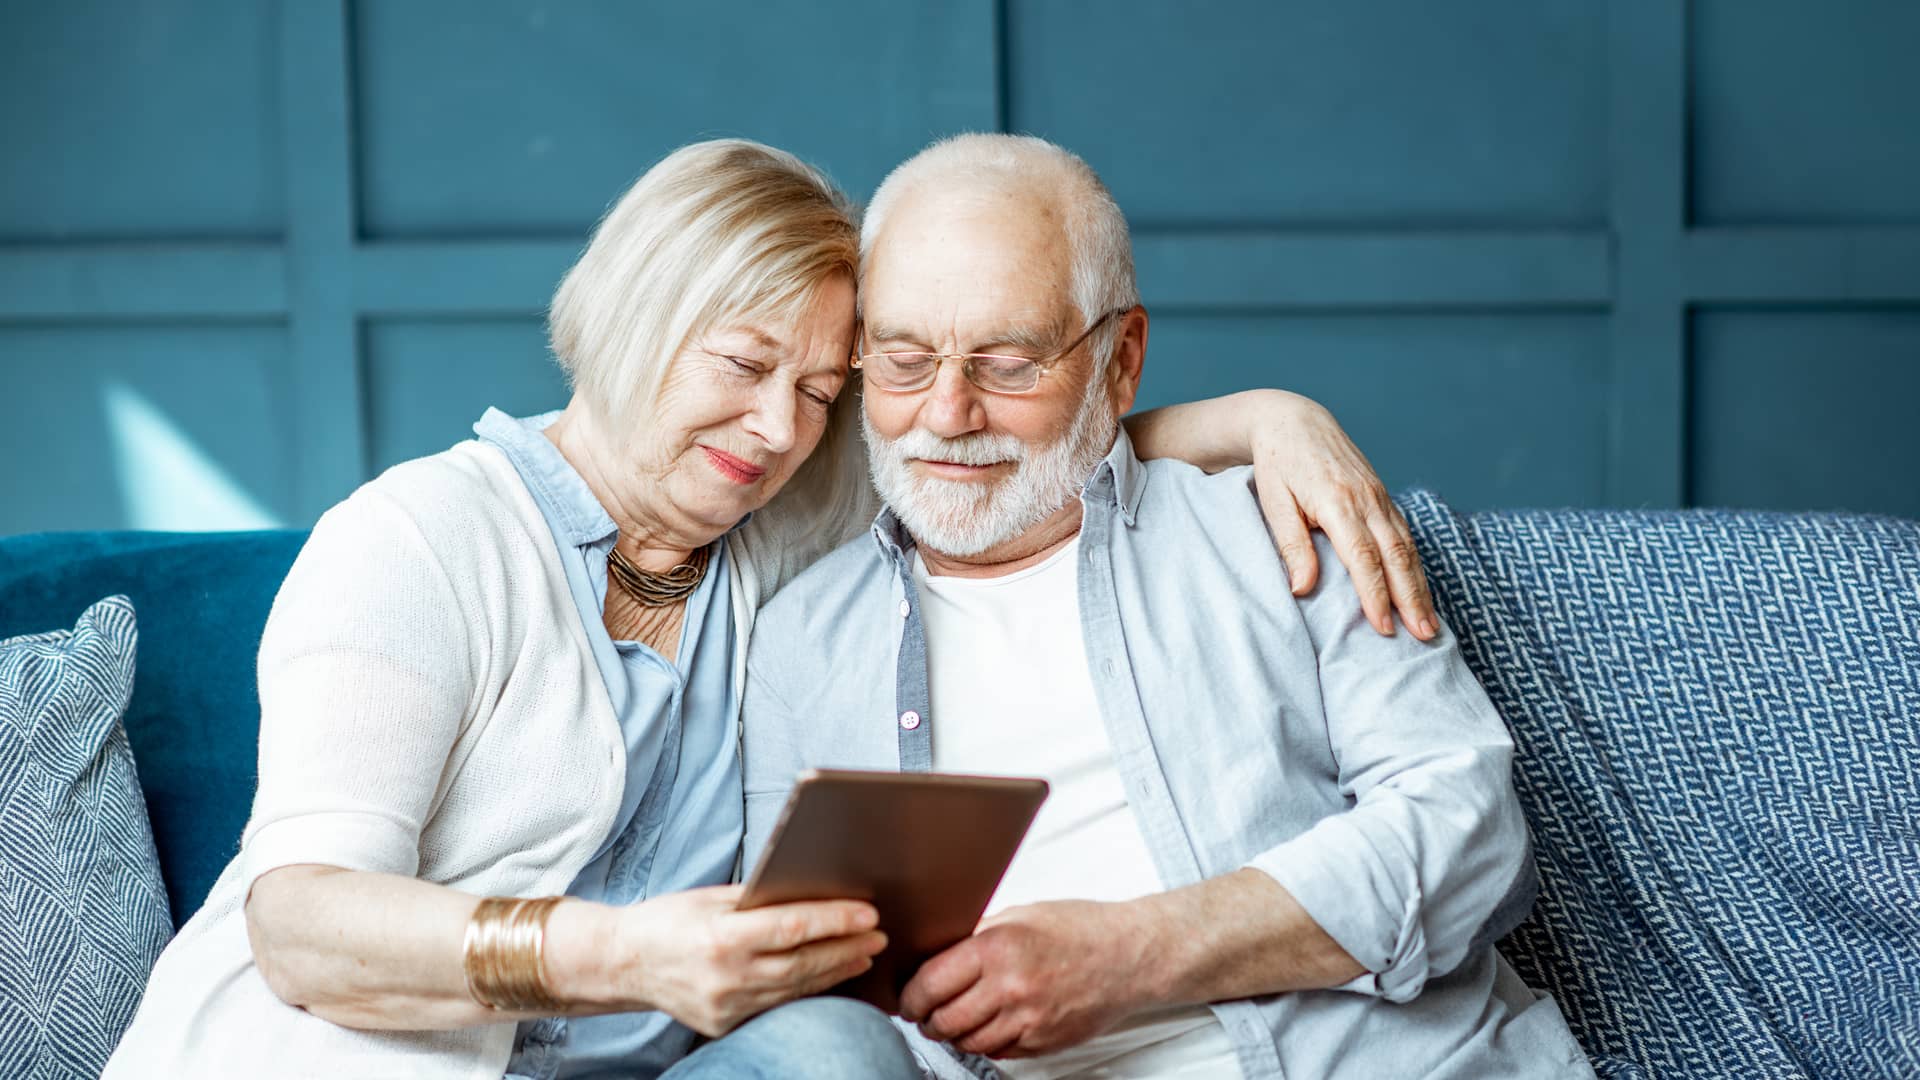 Pareja de jubilados planificando con su tablet su próximo viaje gracias a su plan de pensiones de bbva